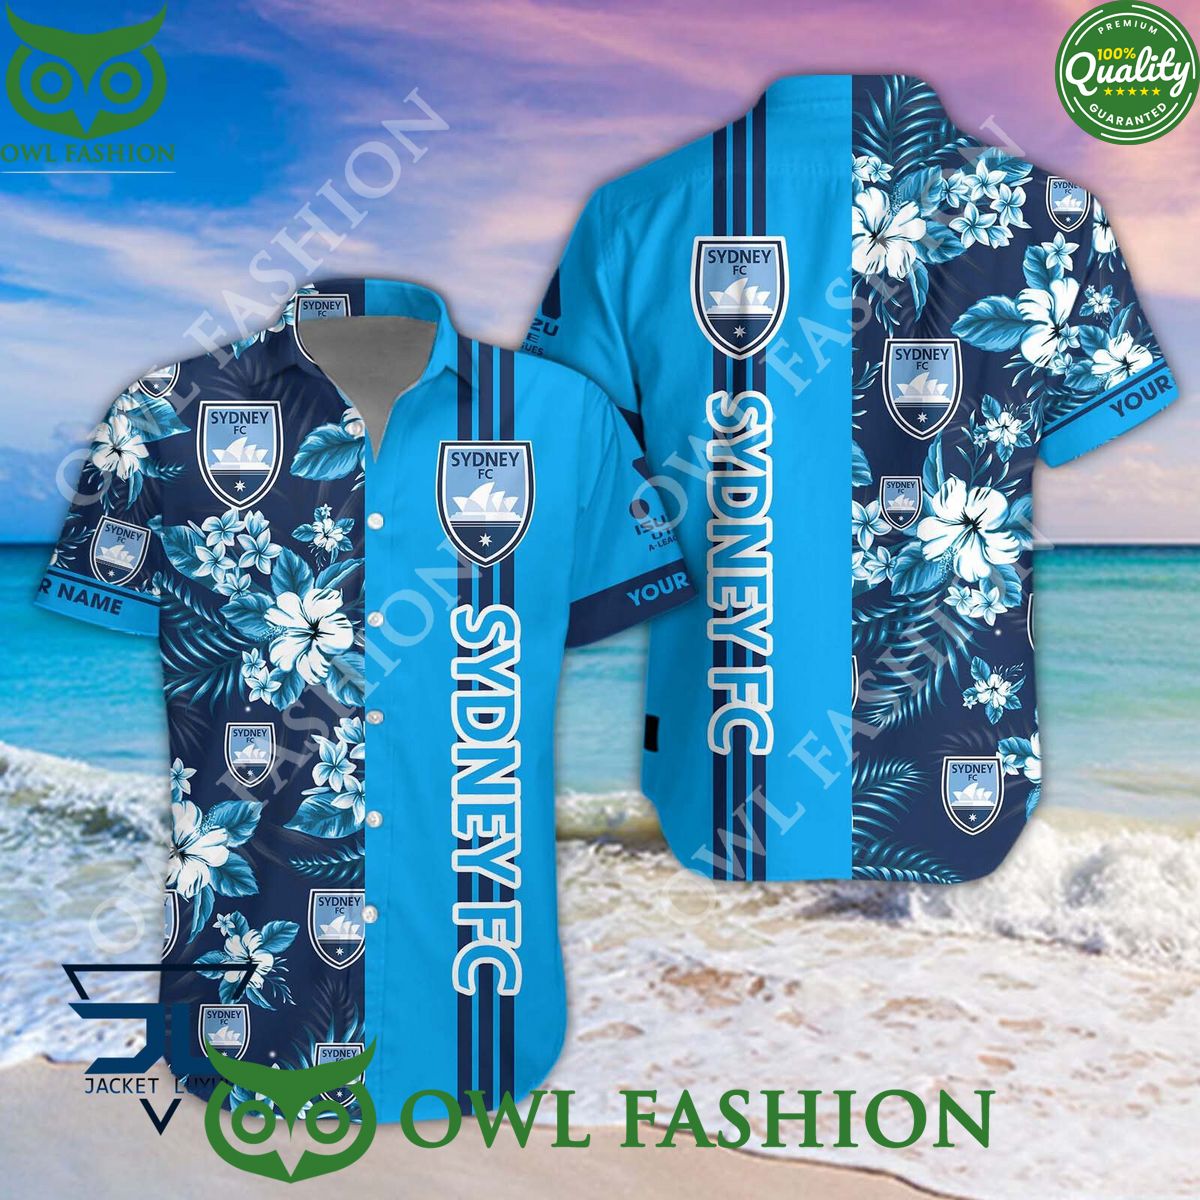 sydney fc a league football hawaiian shirt and short 1 rcuoj.jpg